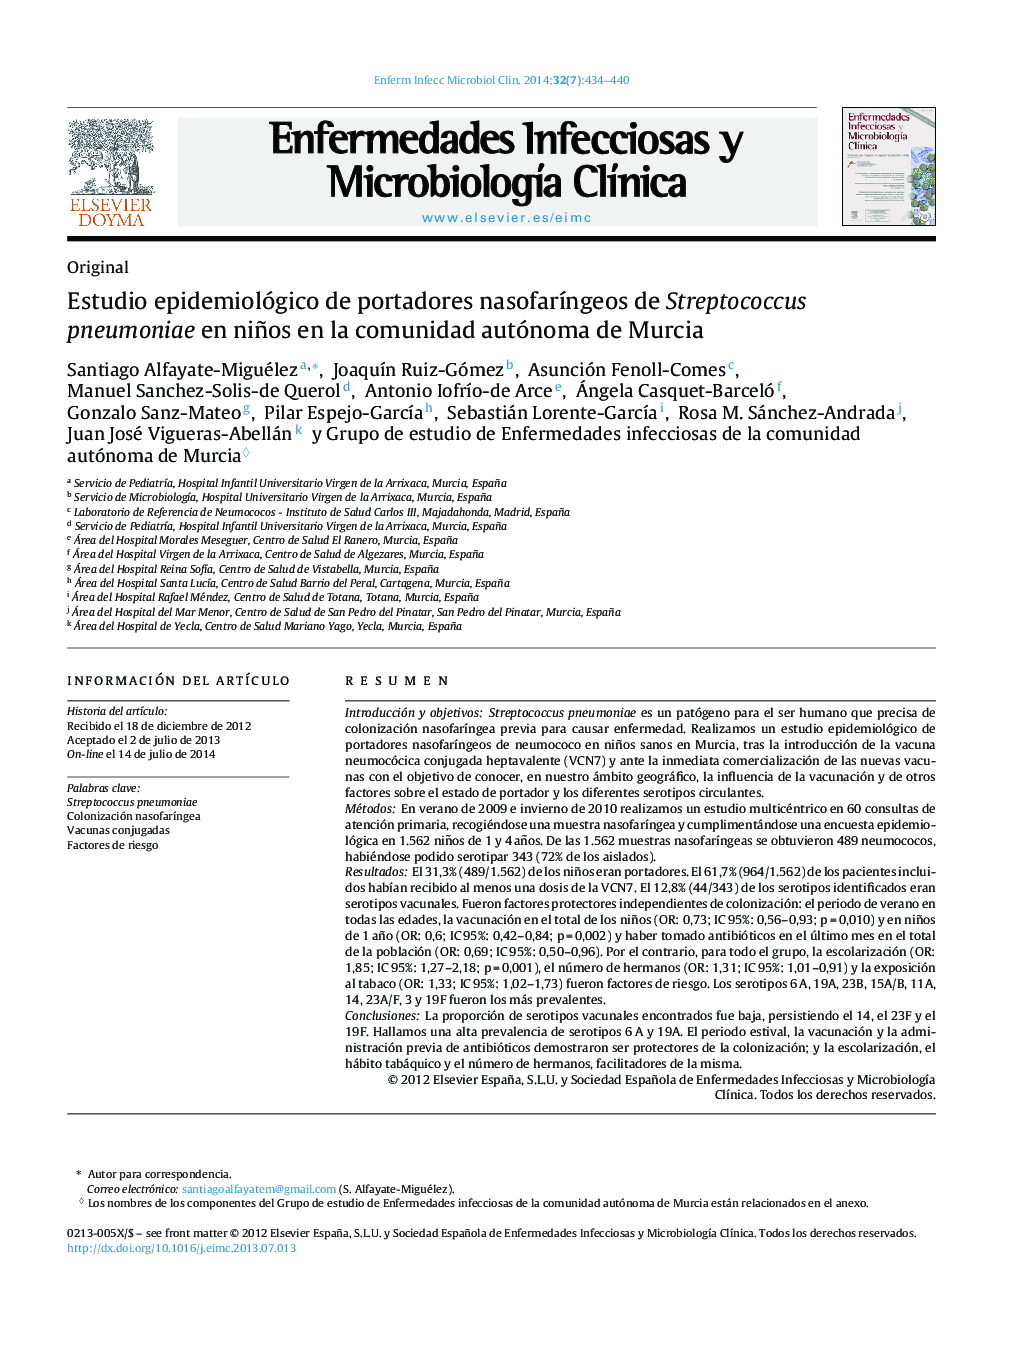 Estudio epidemiológico de portadores nasofarÃ­ngeos de Streptococcus pneumoniae en niños en la comunidad autónoma de Murcia